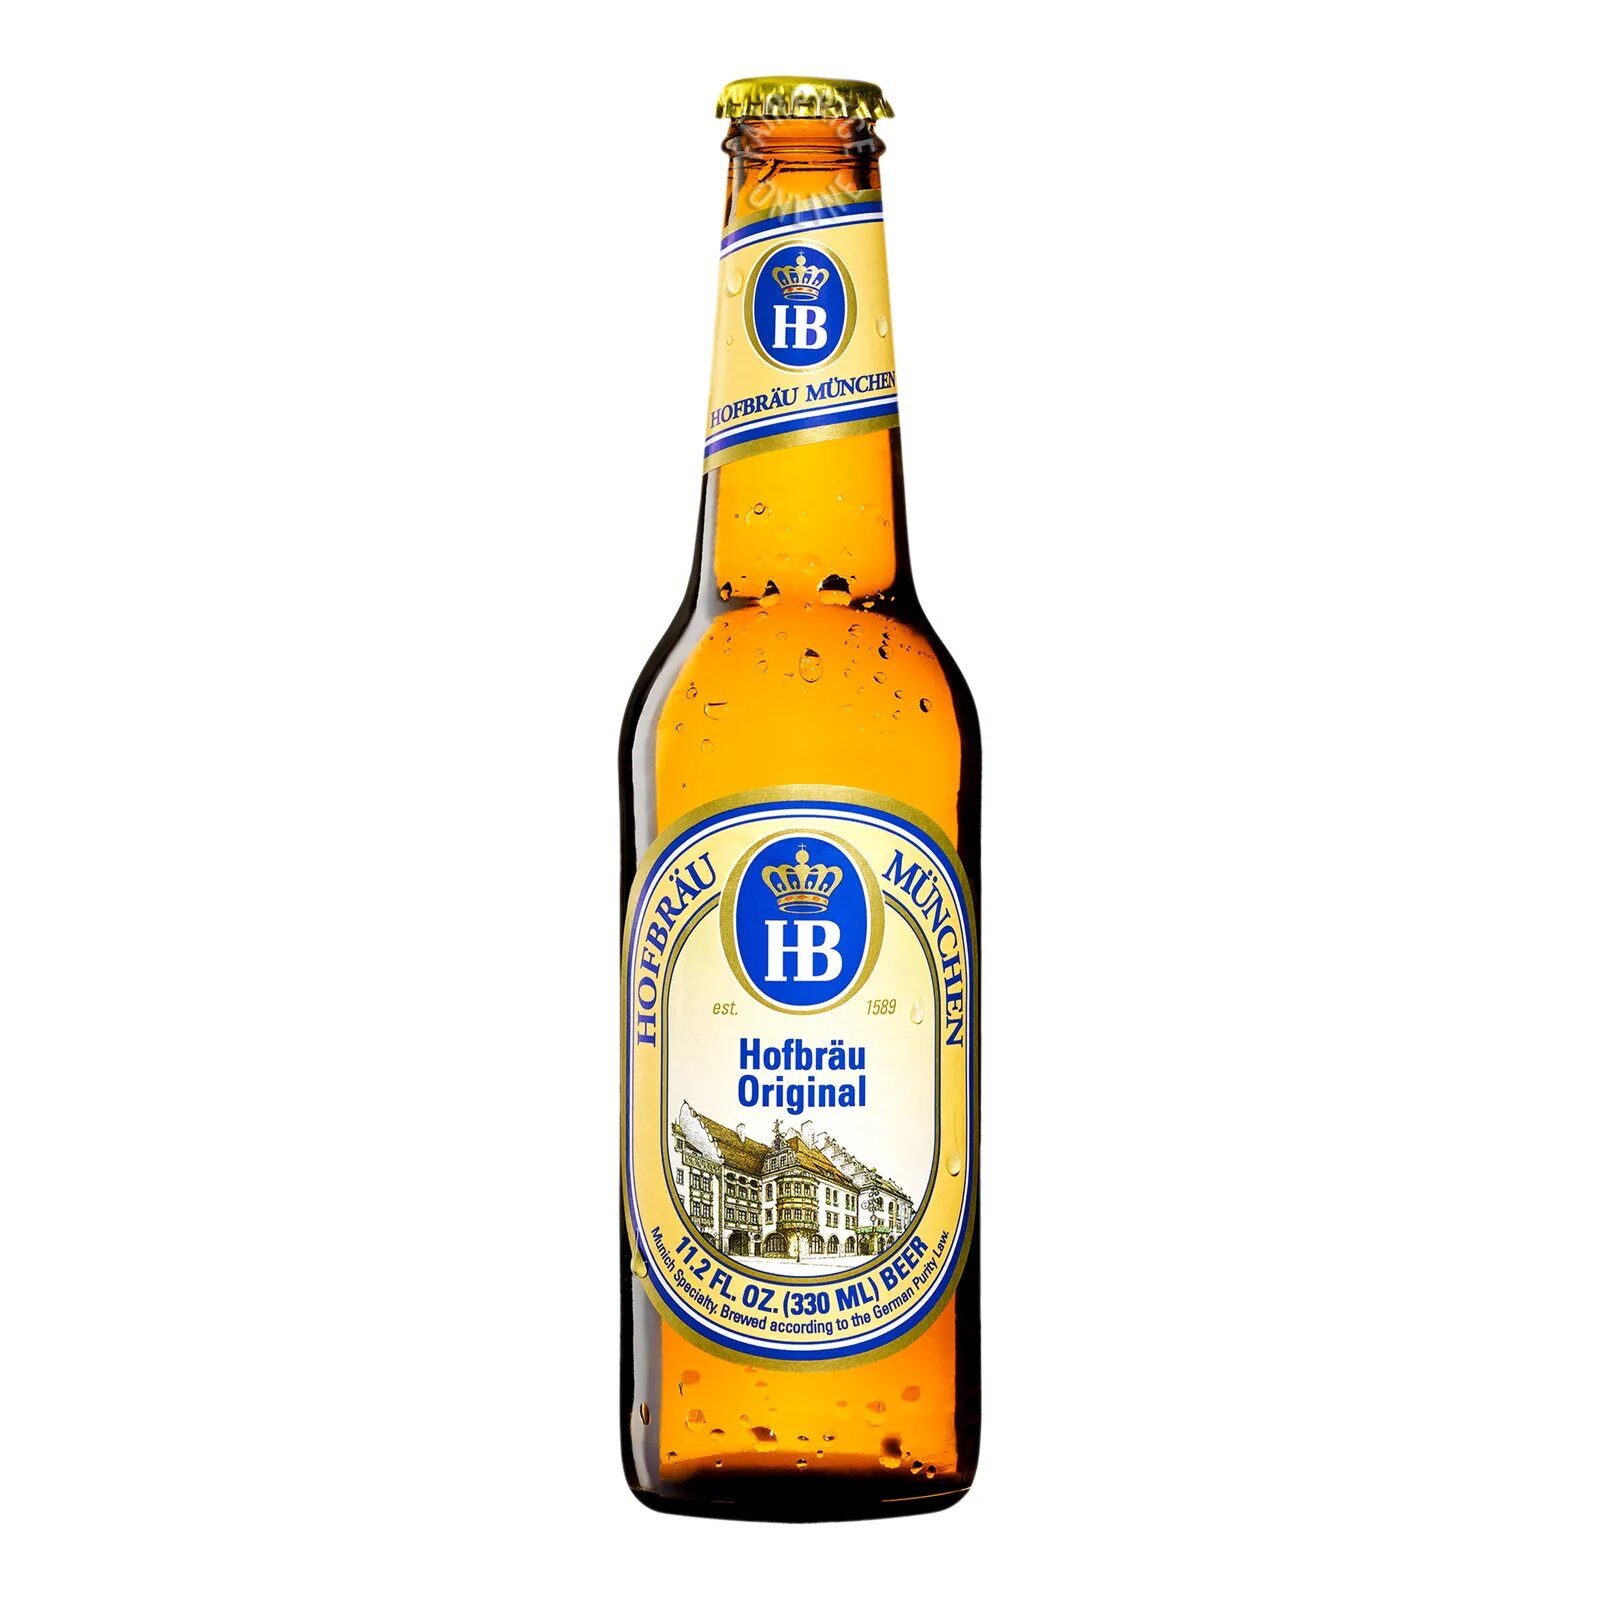 Hofbrau Original пиво. Hofbrau Original пиво светлое. Пиво Хофброй Мюнхен. Хофброй Мюнхен оригинал пиво.